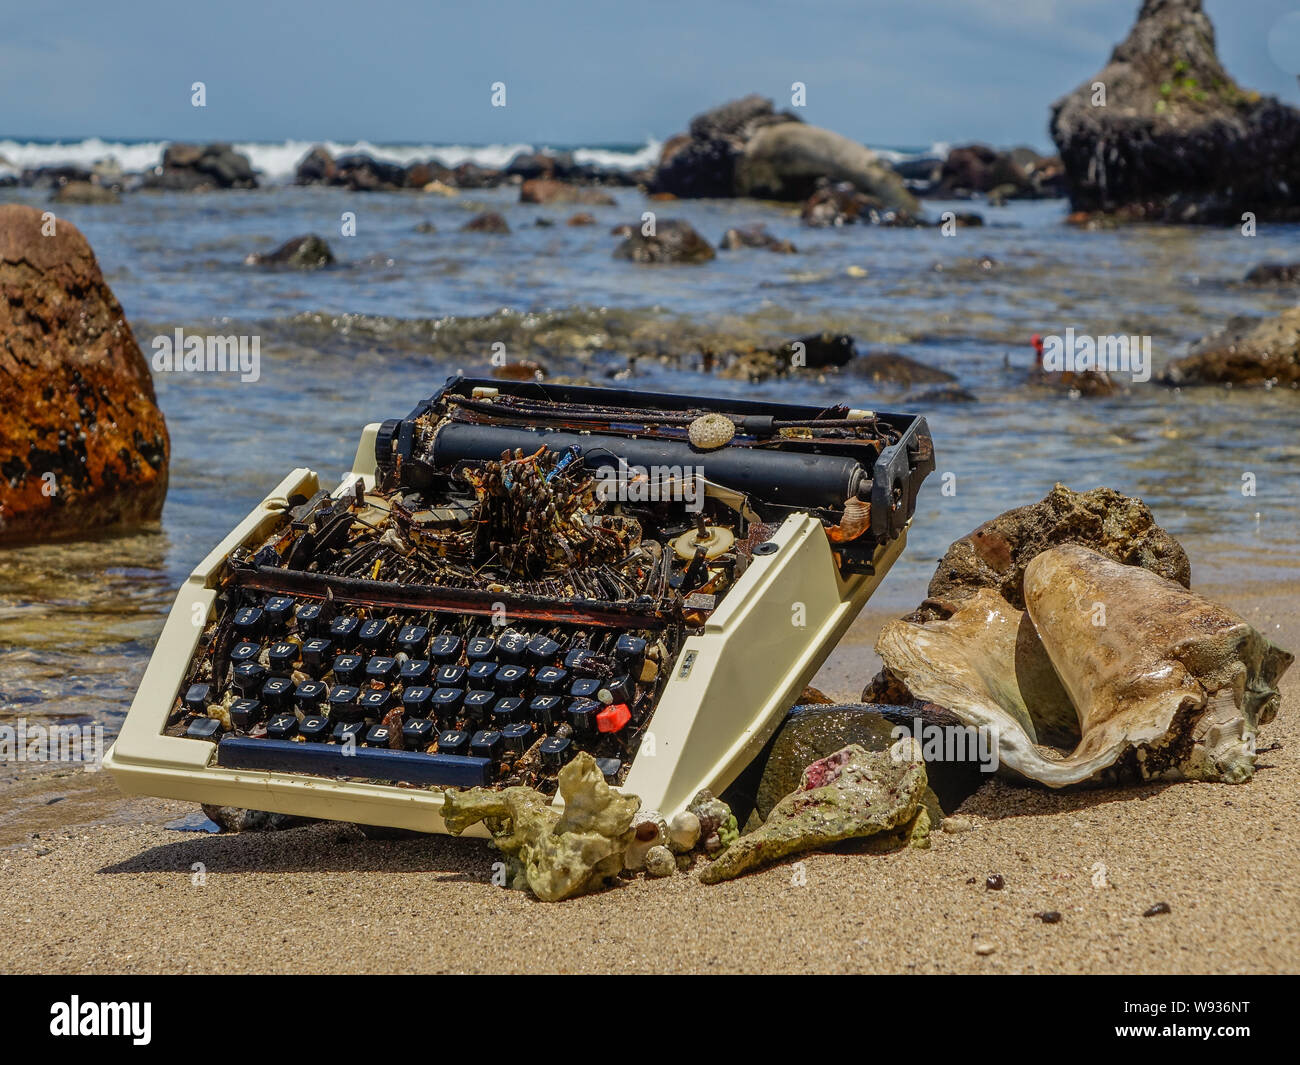 Insel Bastimentos, Bocas del Toro, Panama - 22. März 2017: Alte Schreibmaschine am Ufer eines paradiesischen Strand angeschwemmt Stockfoto